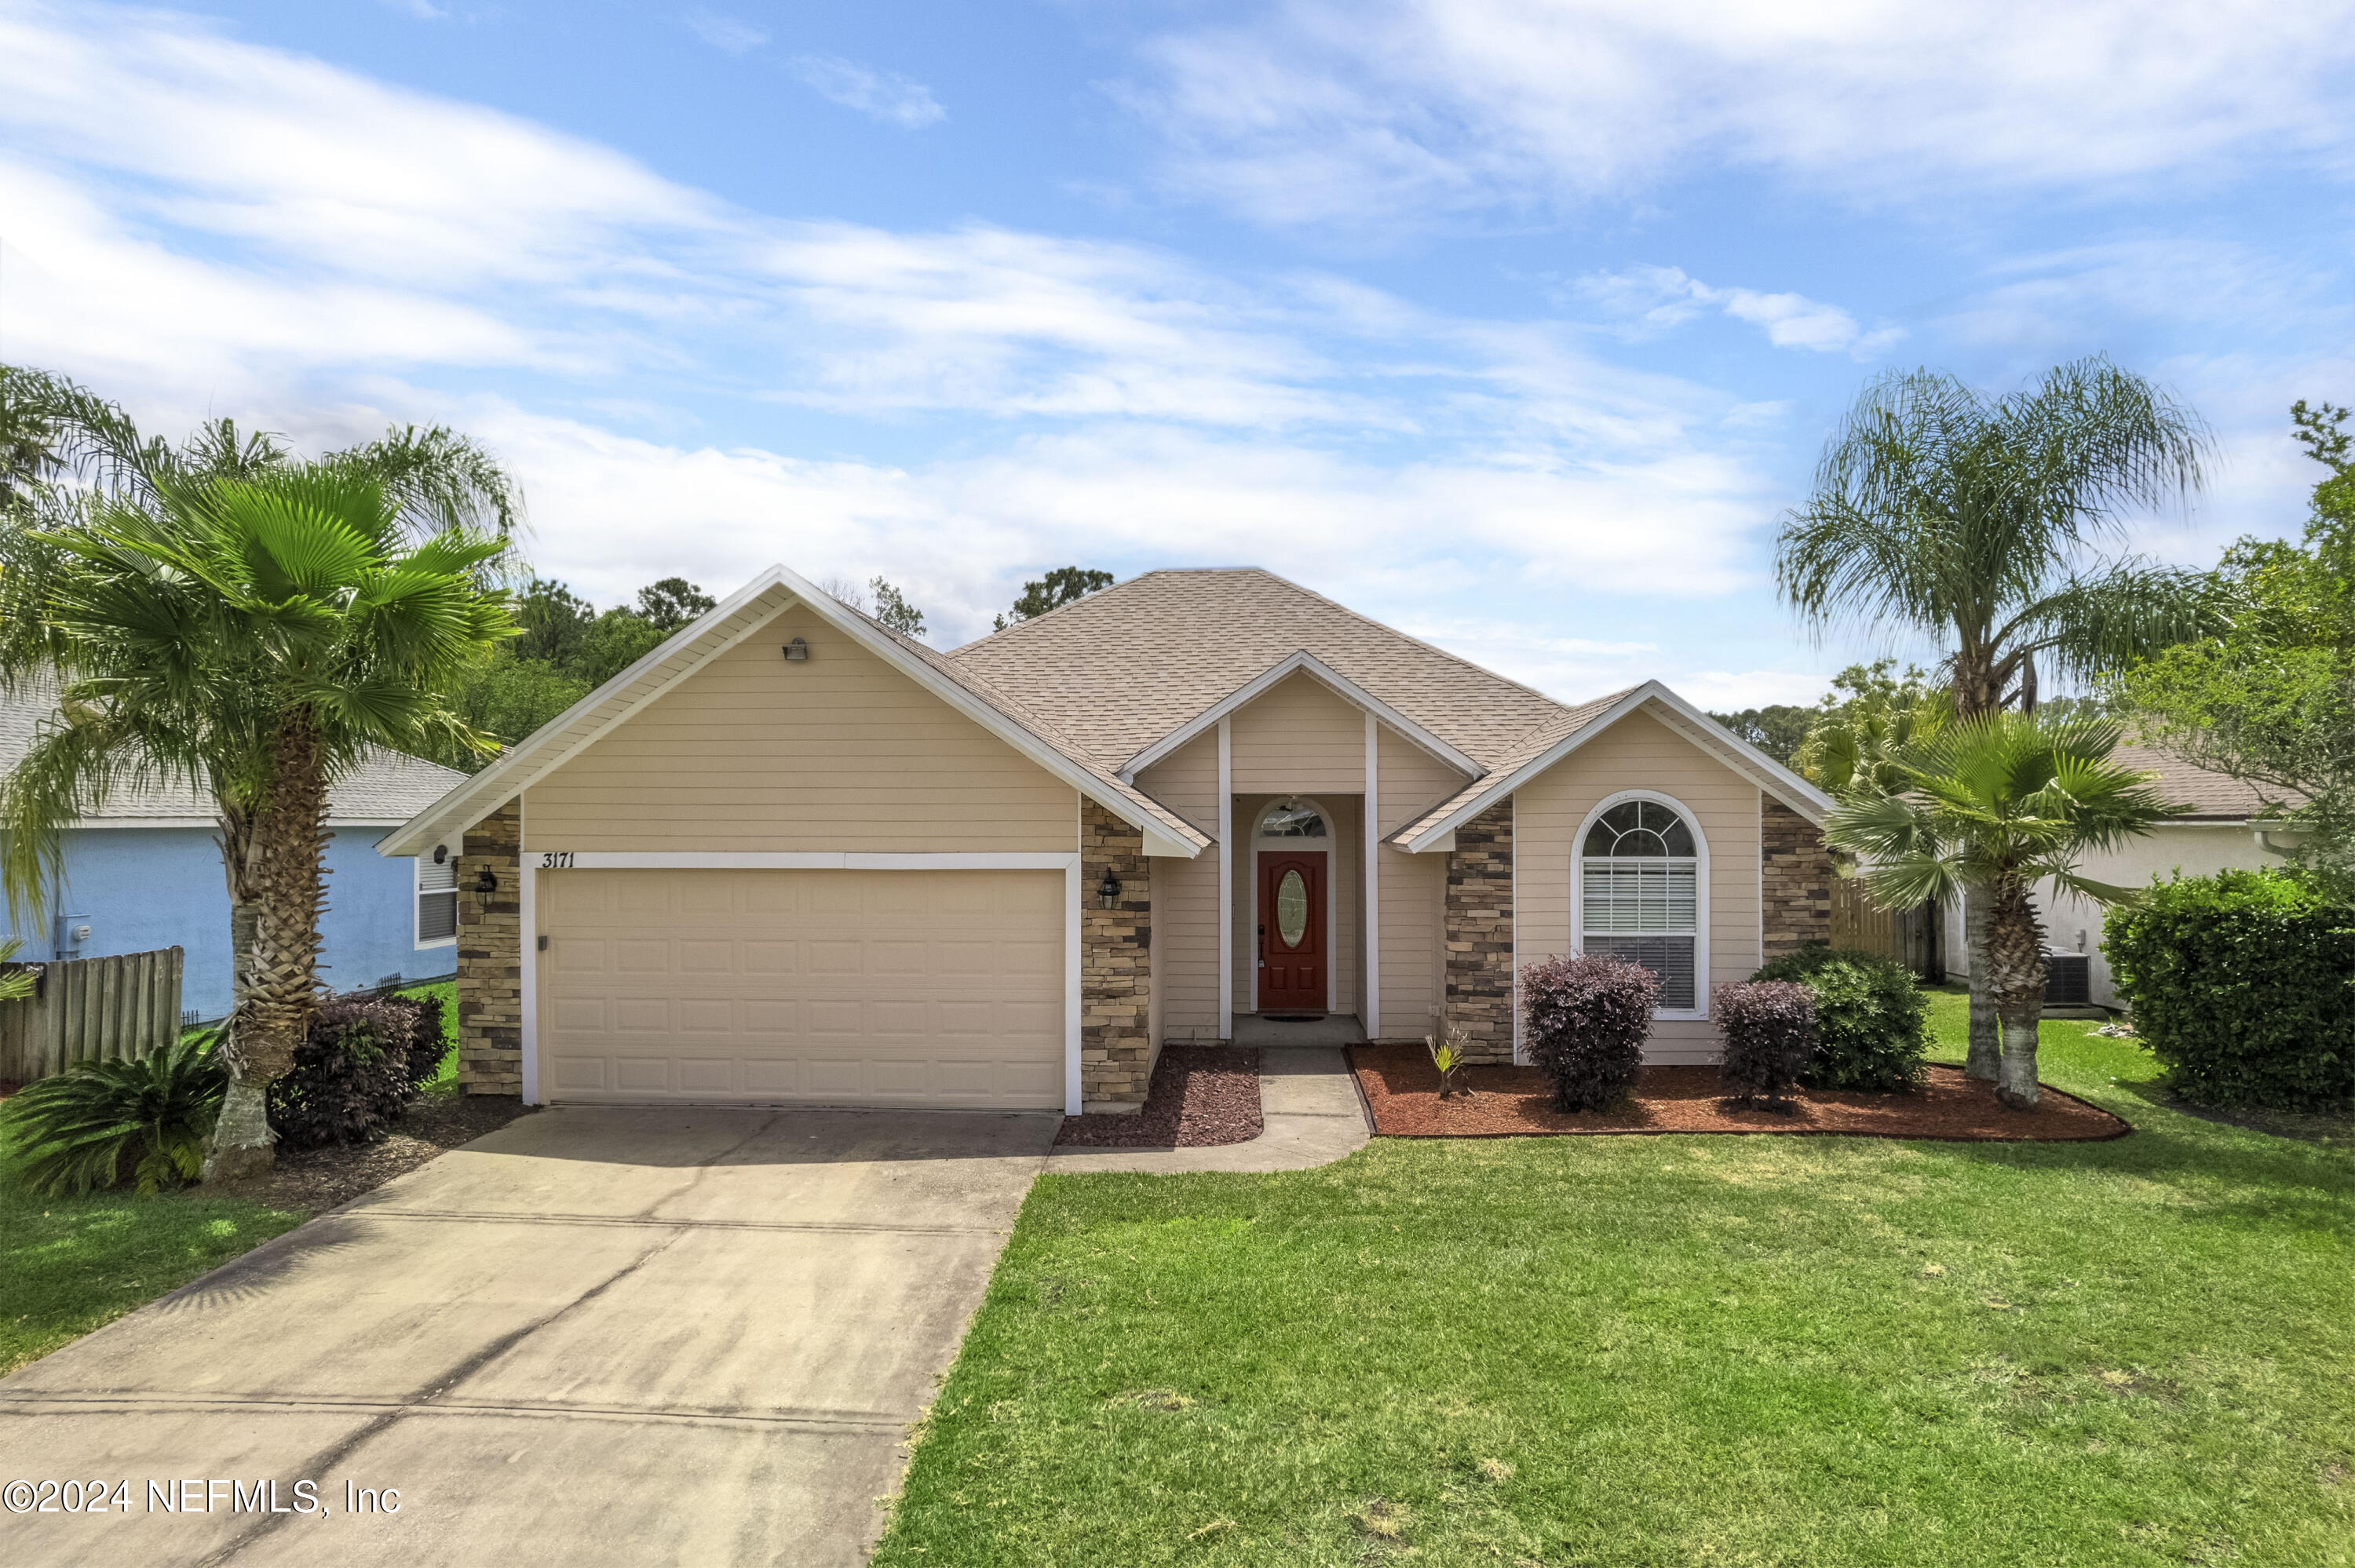 Middleburg, FL home for sale located at 3171 Wavering Lane, Middleburg, FL 32068